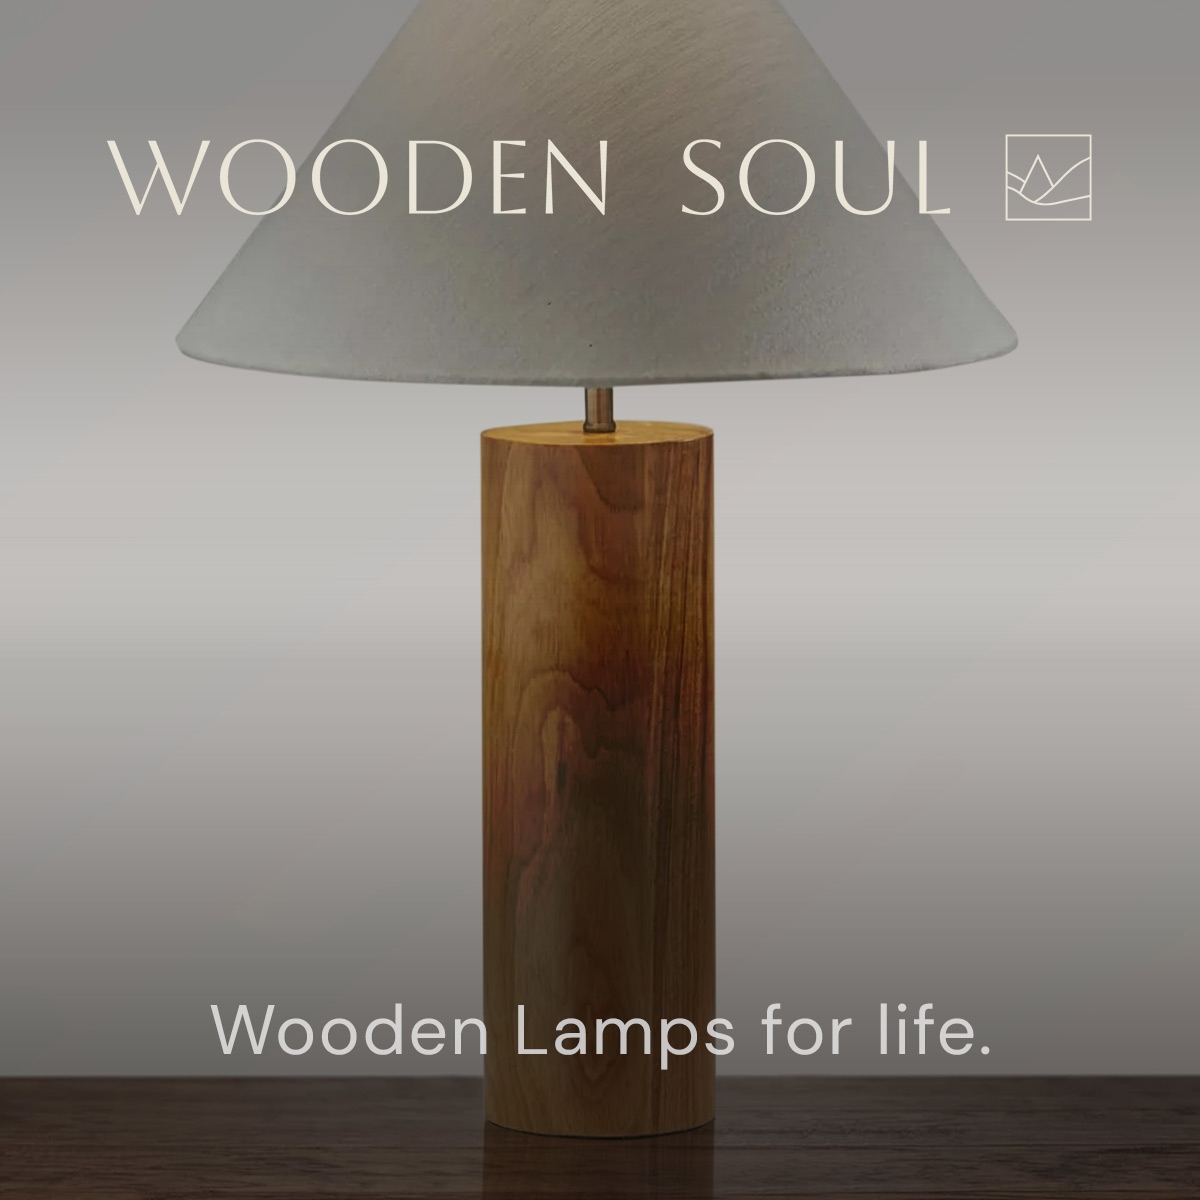 Wooden Soul. Wooden lamps for life. 

#woodensoul #woodensoulspaces #shopwoodensoul #furnitureforlife #woodfurniture #woodenfurniture #woodlamp #tablelamp #lightinginspo #livingroominspo #bedroominspo #interiorinspo